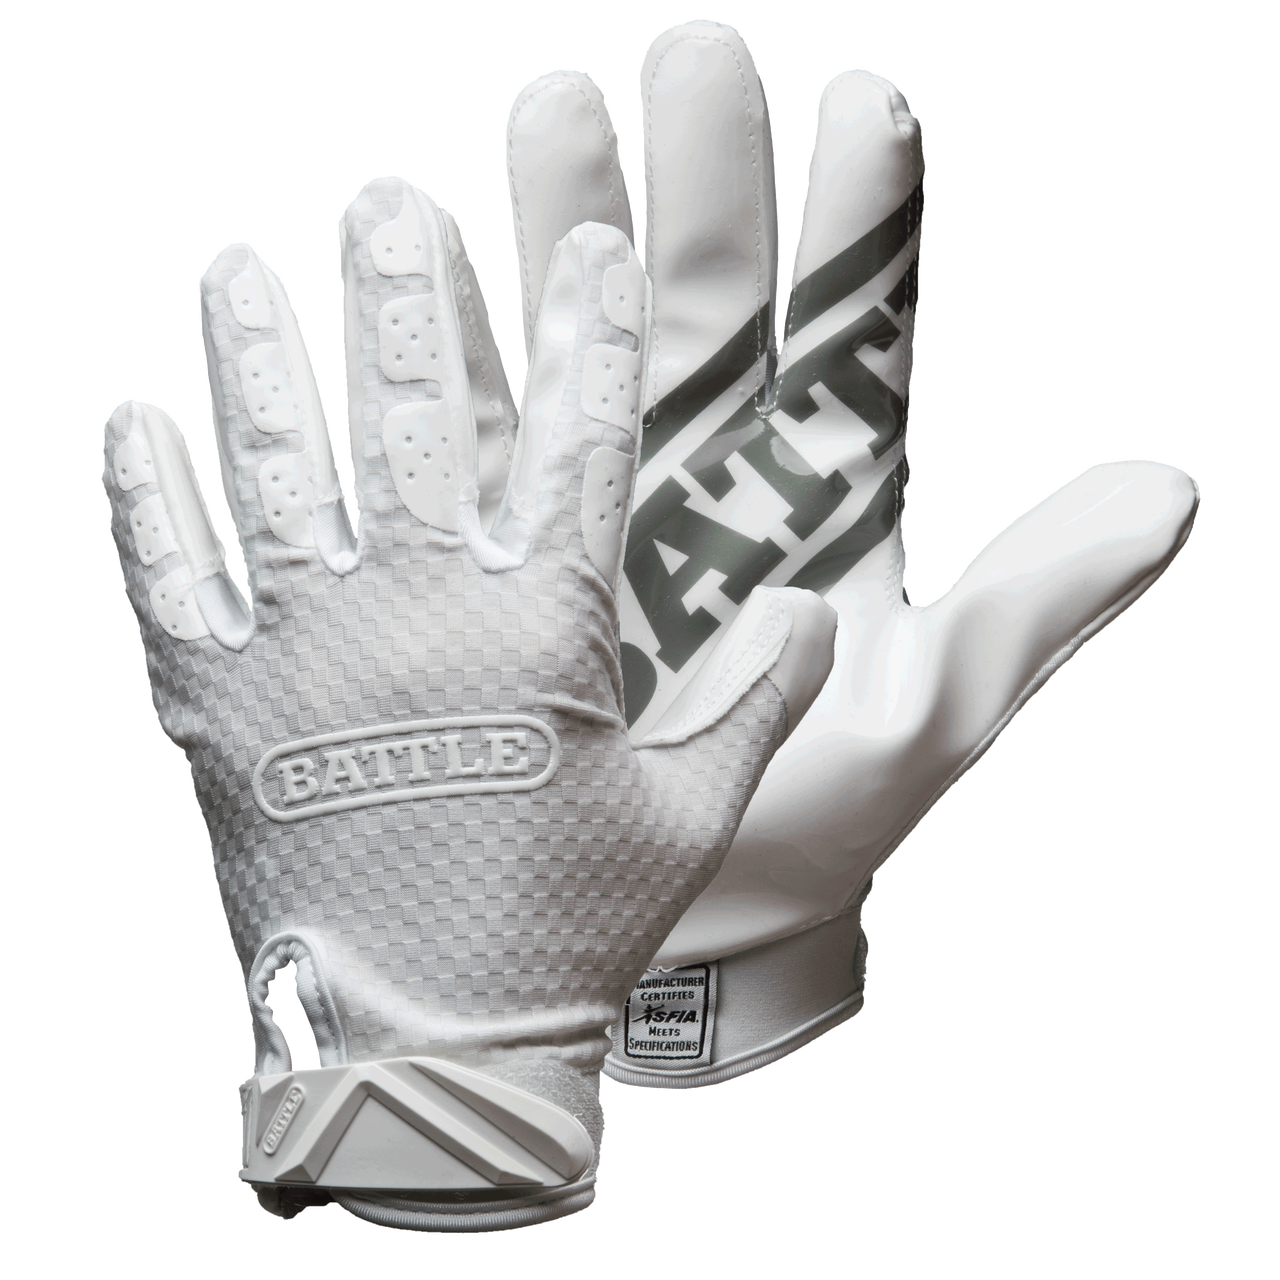 White Football Gloves